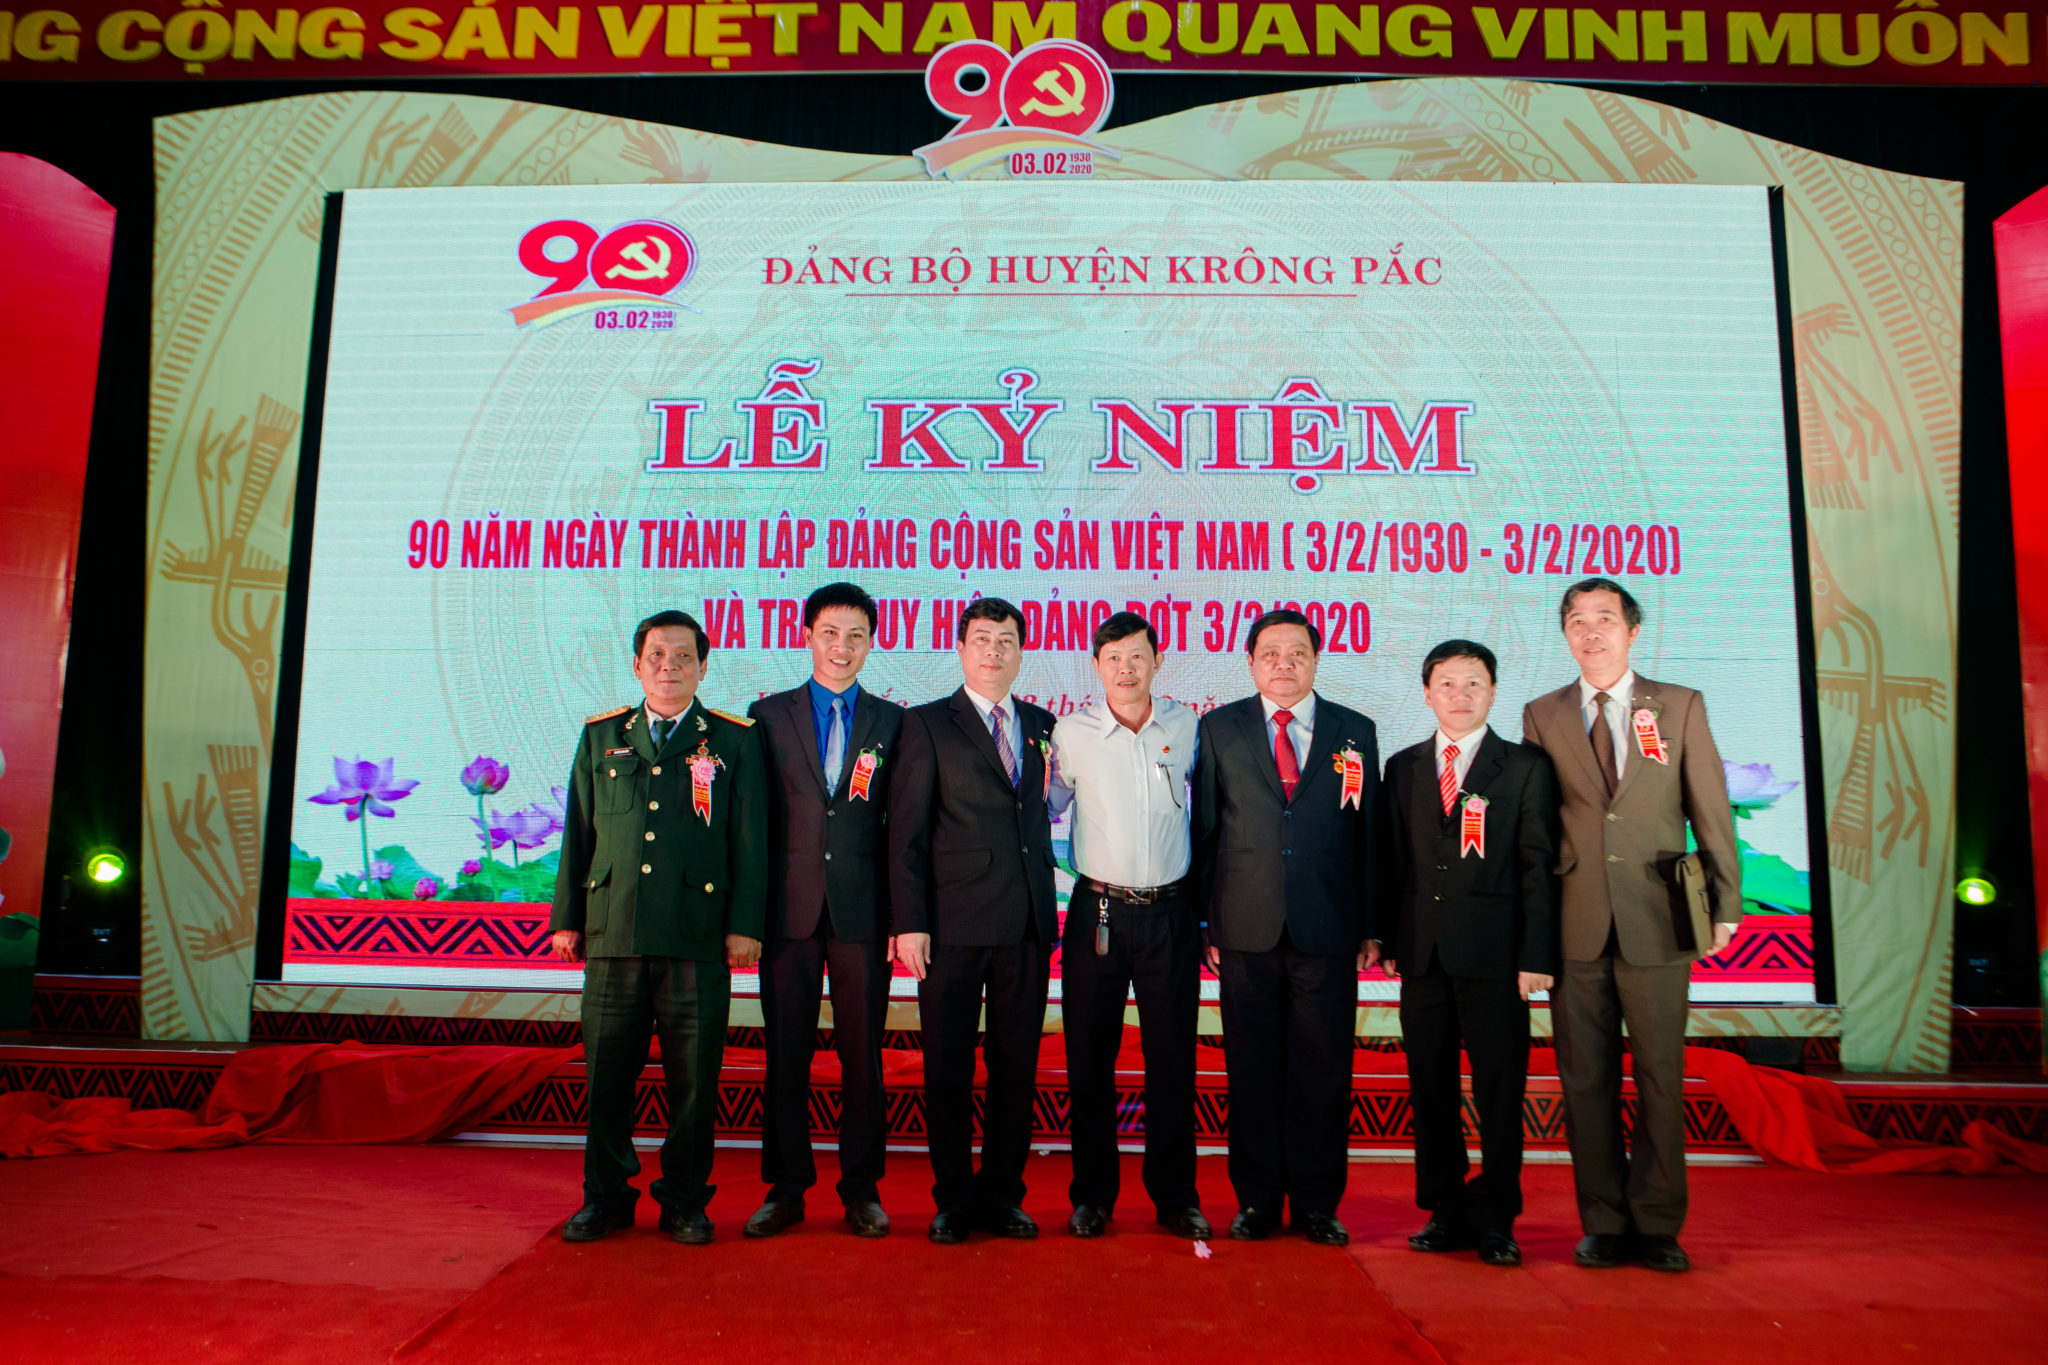 Huyện Krông Pắc tổ chức kỷ niệm 90 năm Ngày thành lập Đảng Cộng sản Việt Nam